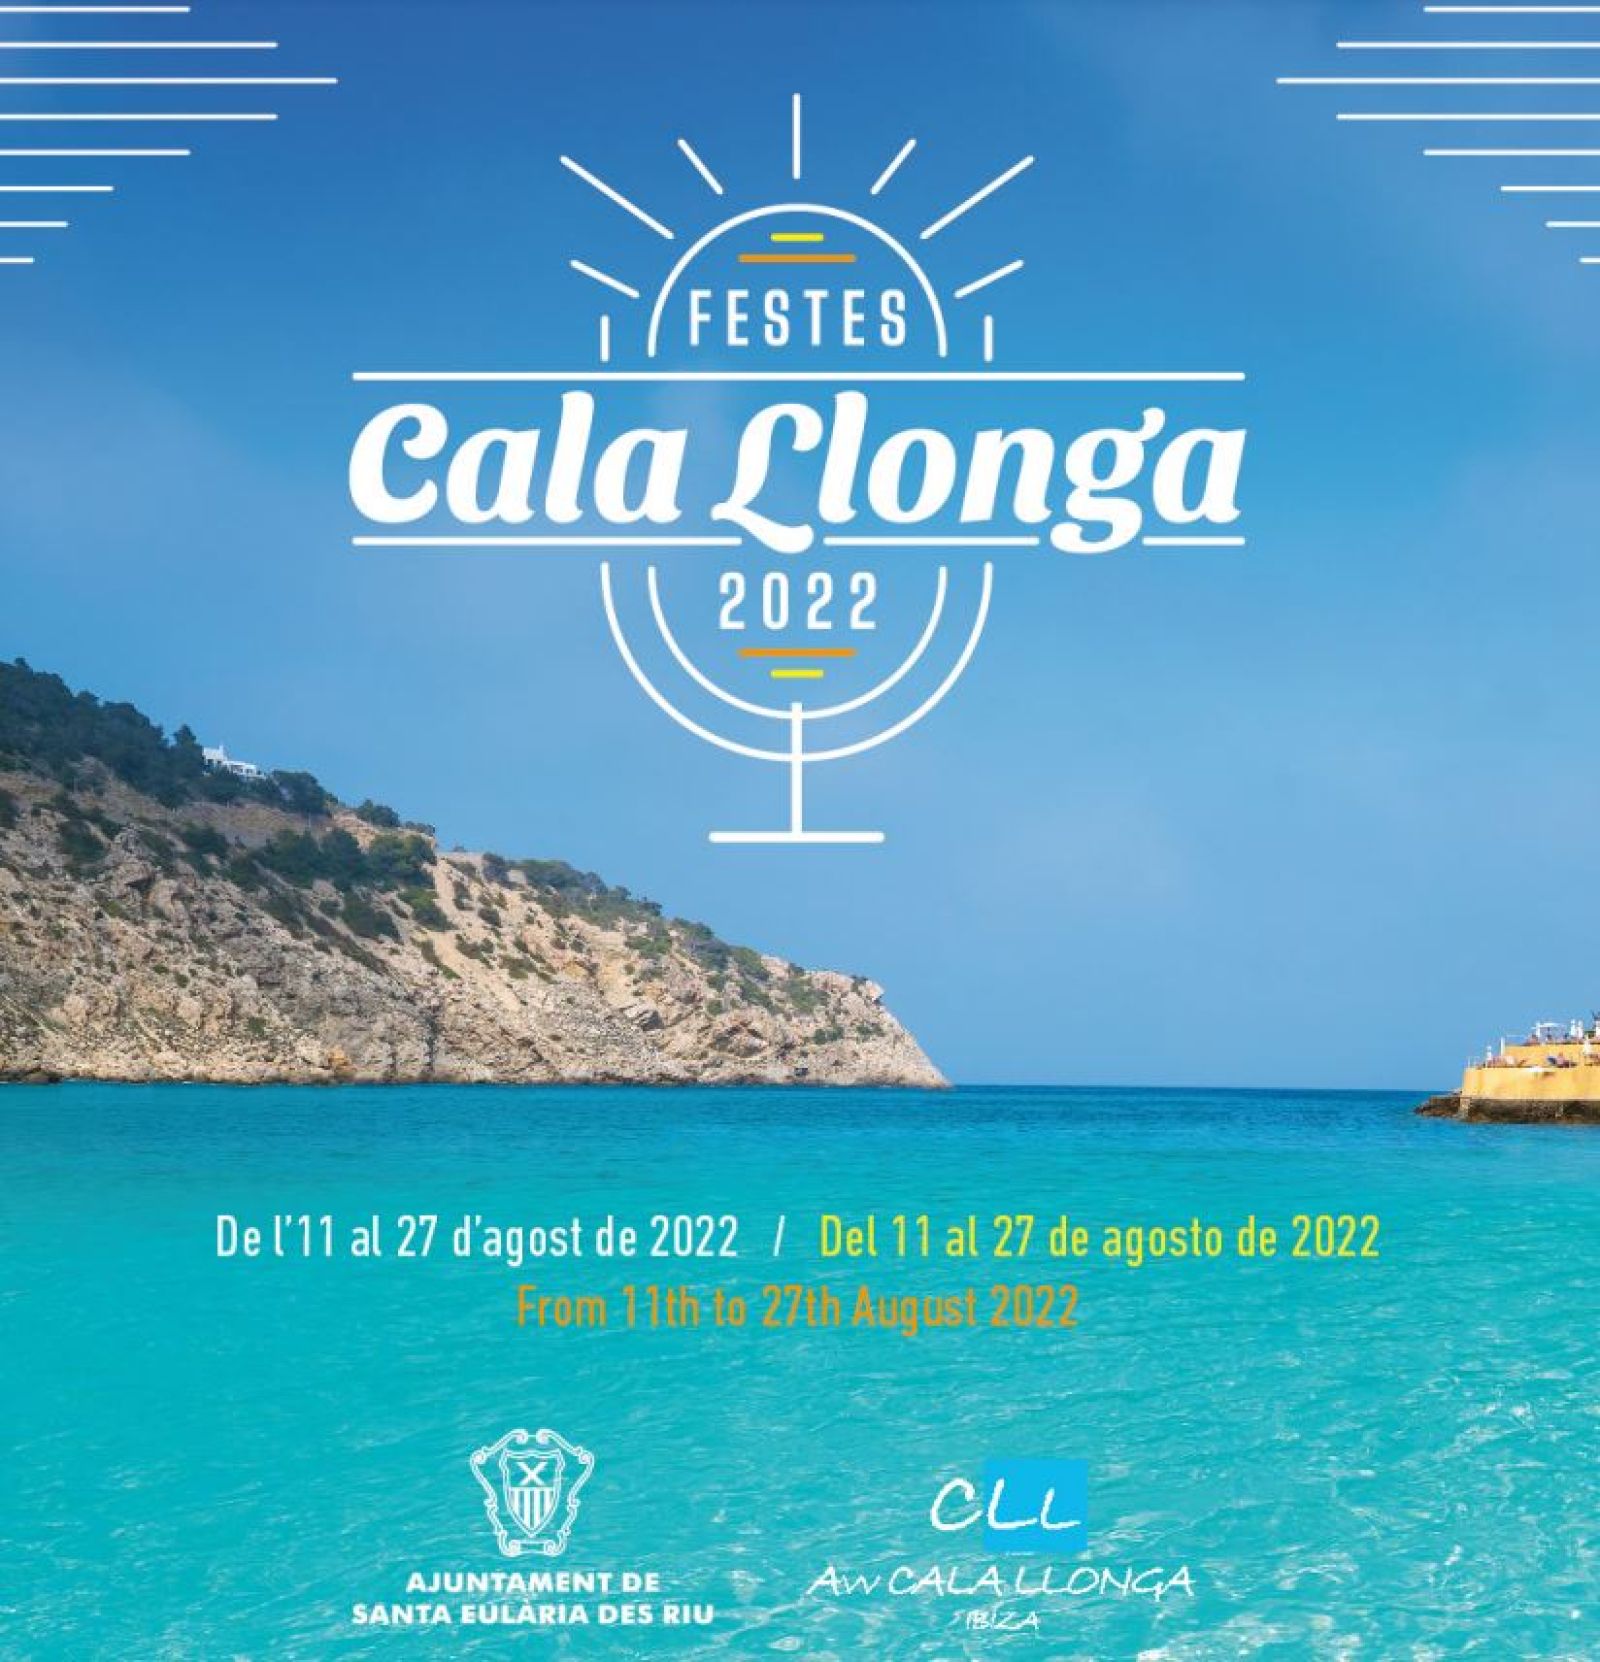 El rugby y el vóley en la playa se une a la música y a los actos tradicionales en las fiestas de Cala Llonga 2022